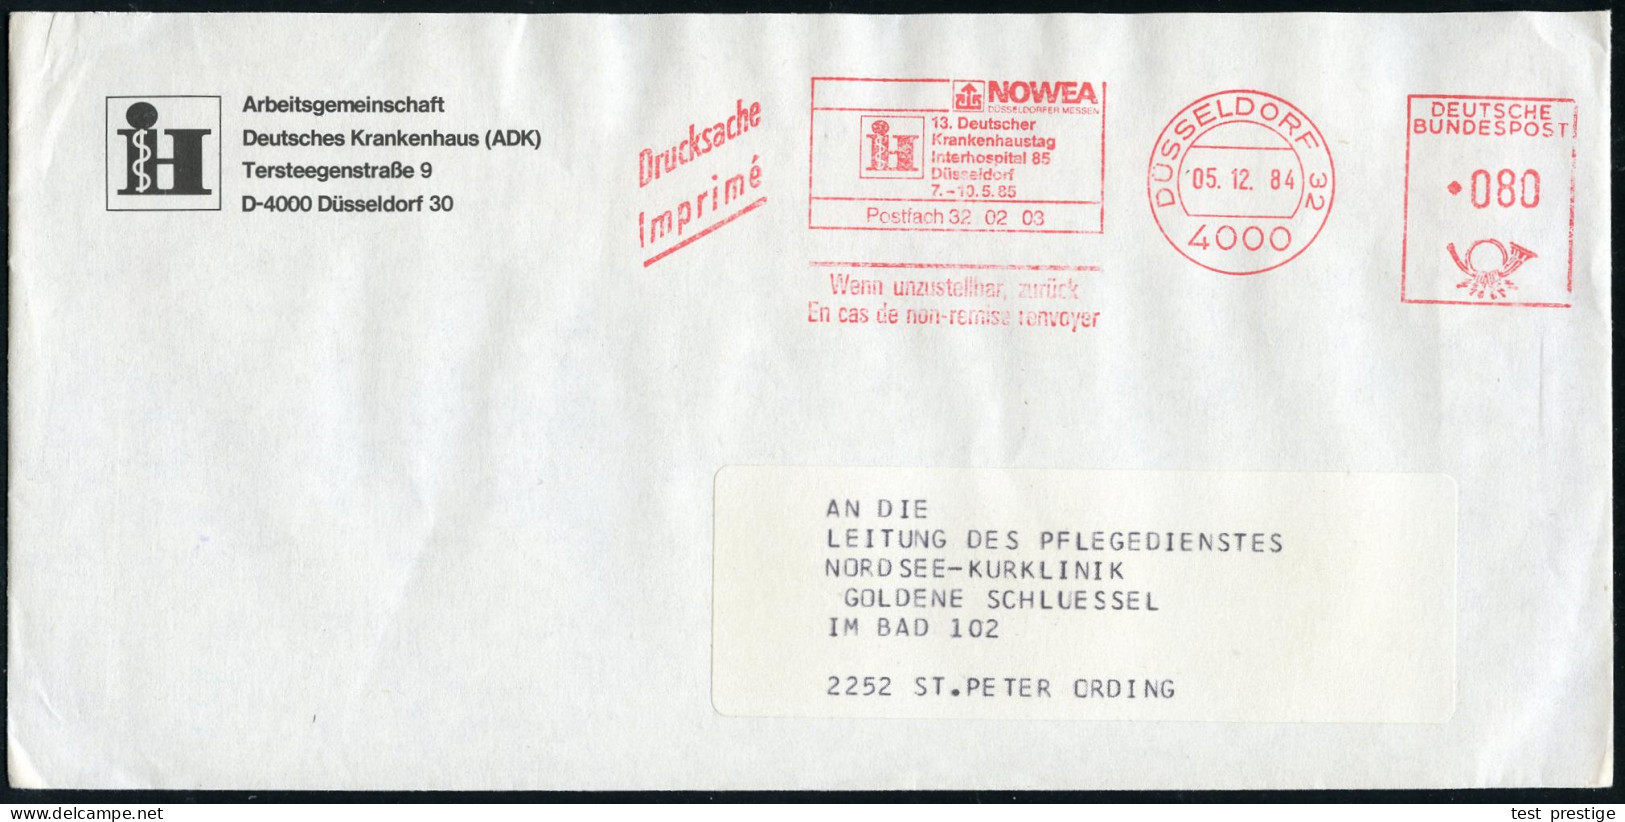 4000 DÜSSELDORF 32/ NOWEA/ !&sect;:Deutscher/ Krankenhaustag/ Interhospital 85.. 1984 (5.12.) AFS (Logo) Auf Vordruck-Bf - Medicine